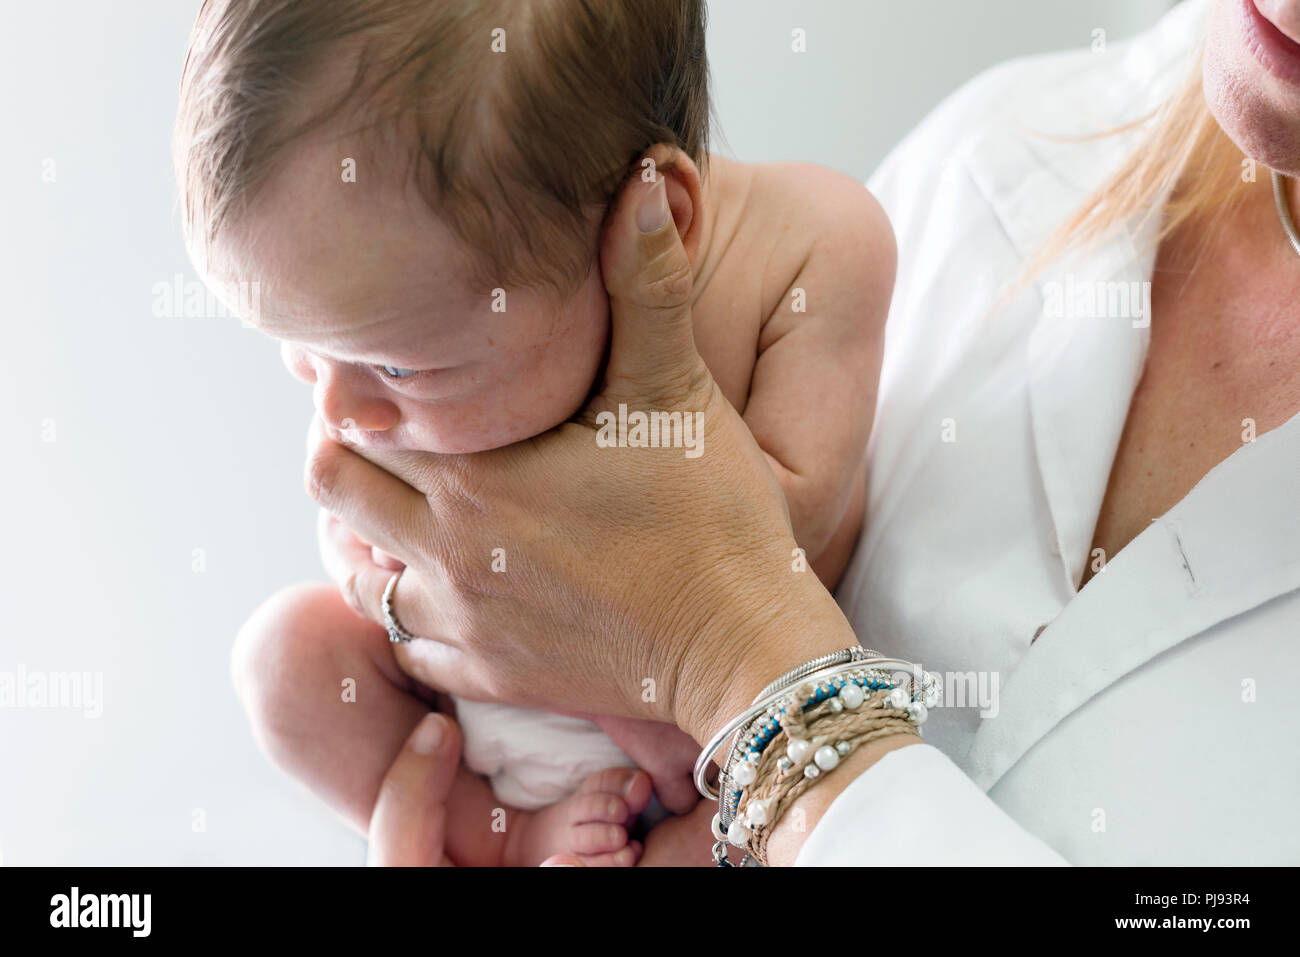 Neugeborenes Baby Boy beiseite, von der Krankenschwester in weiße Uniform gehalten Stockfoto